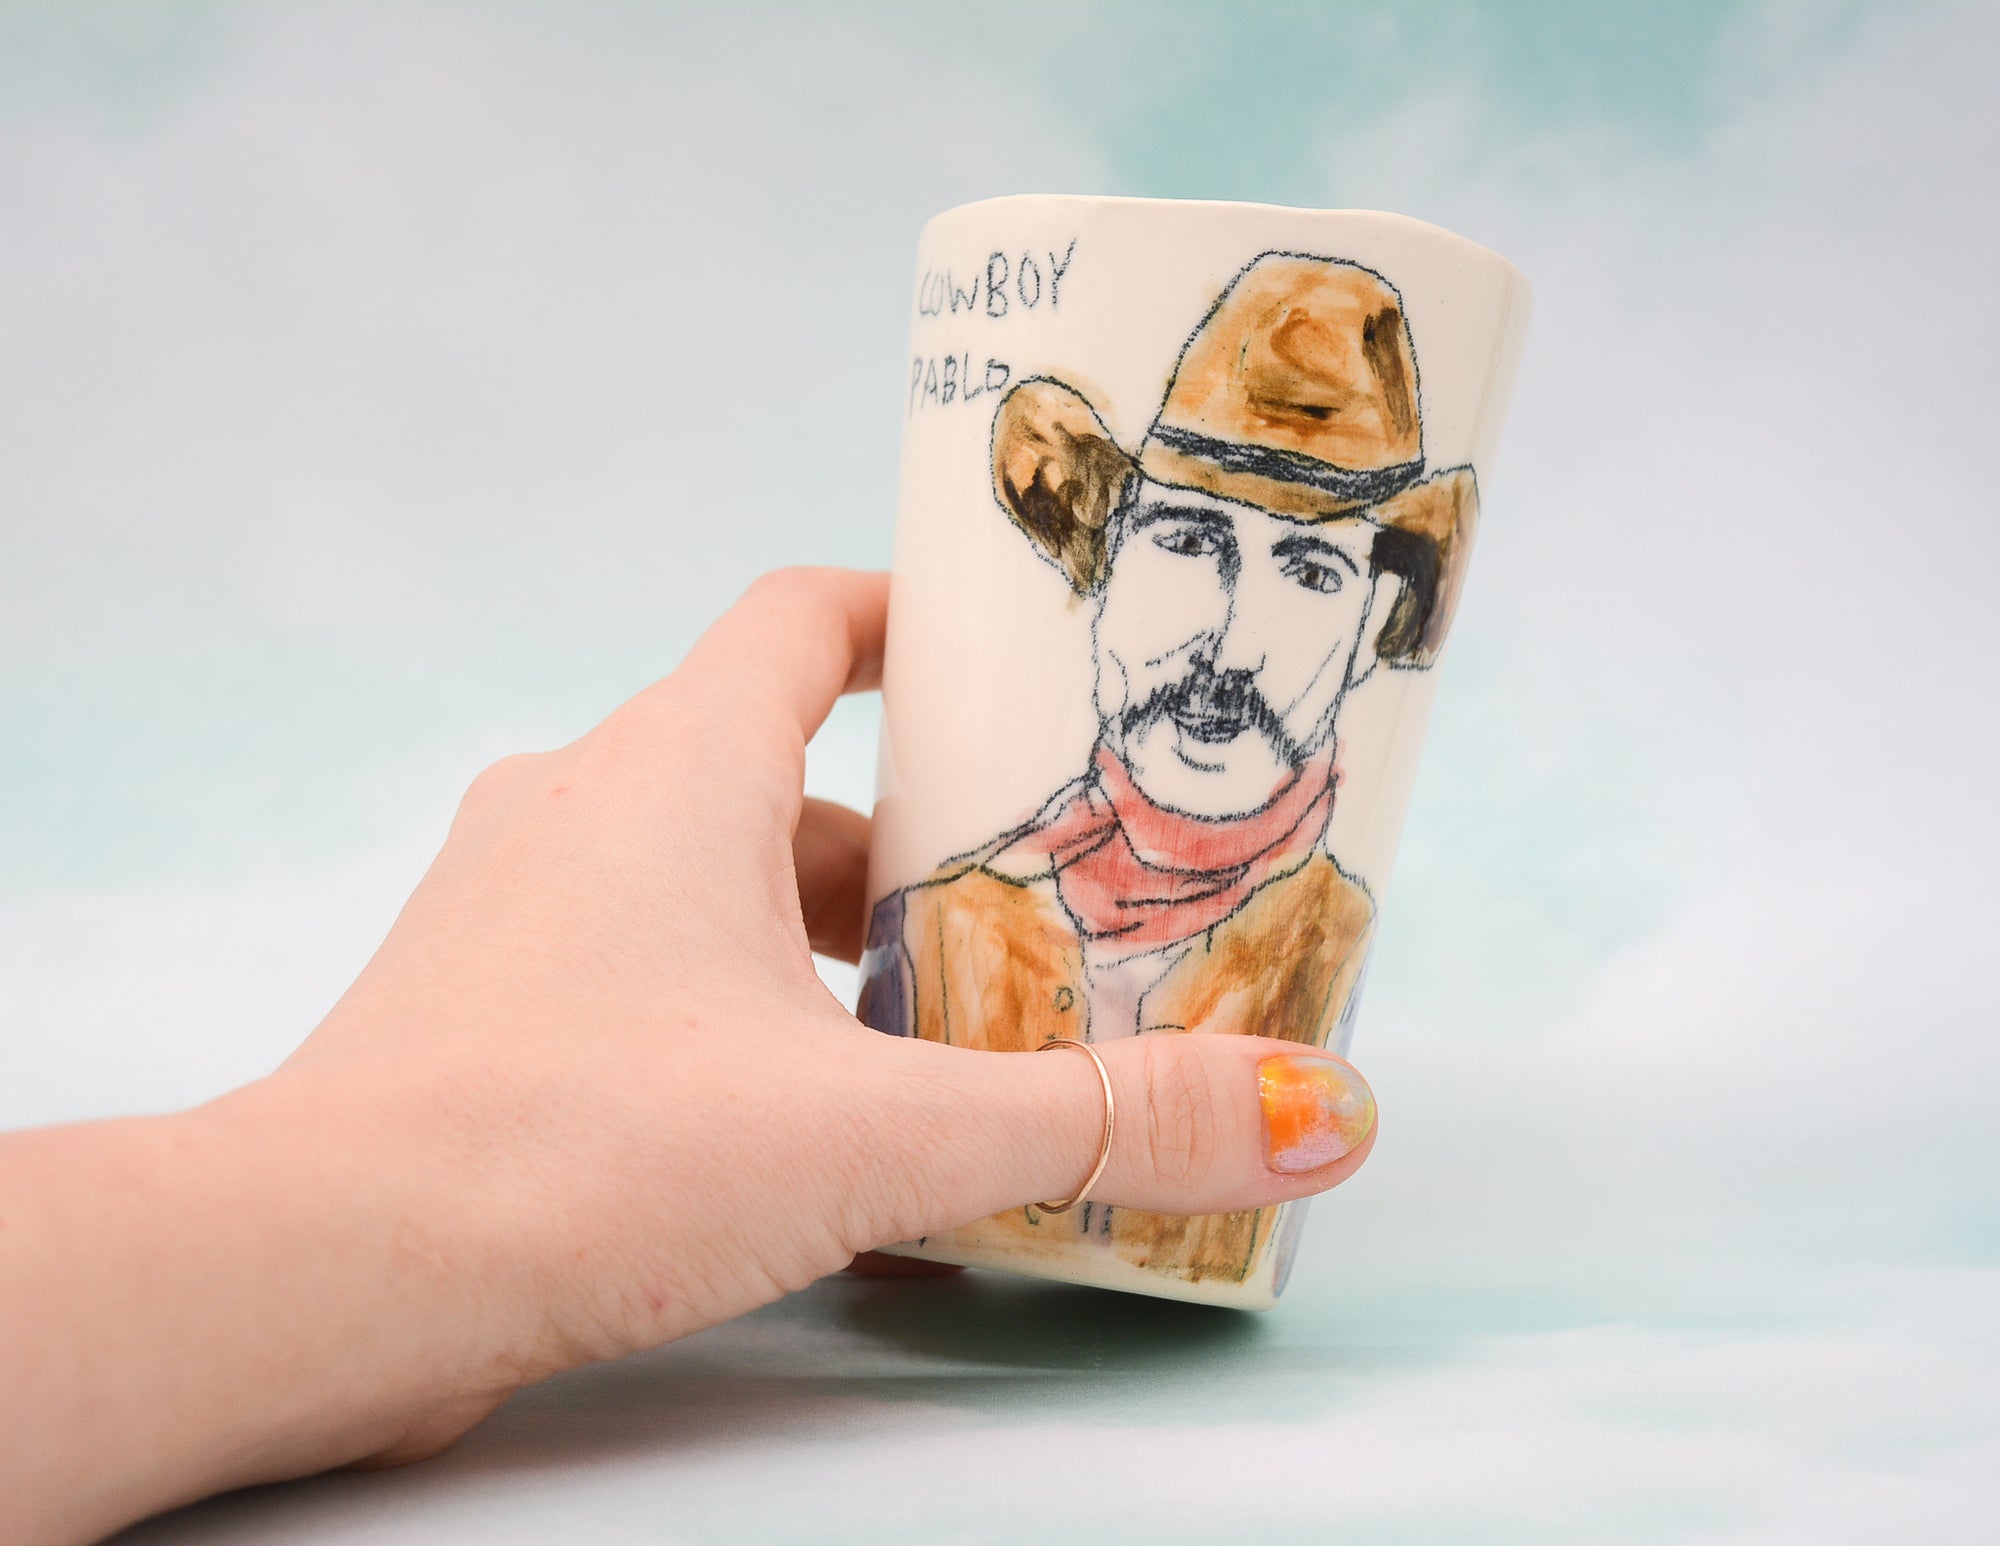 Cowboy Pablo Cup